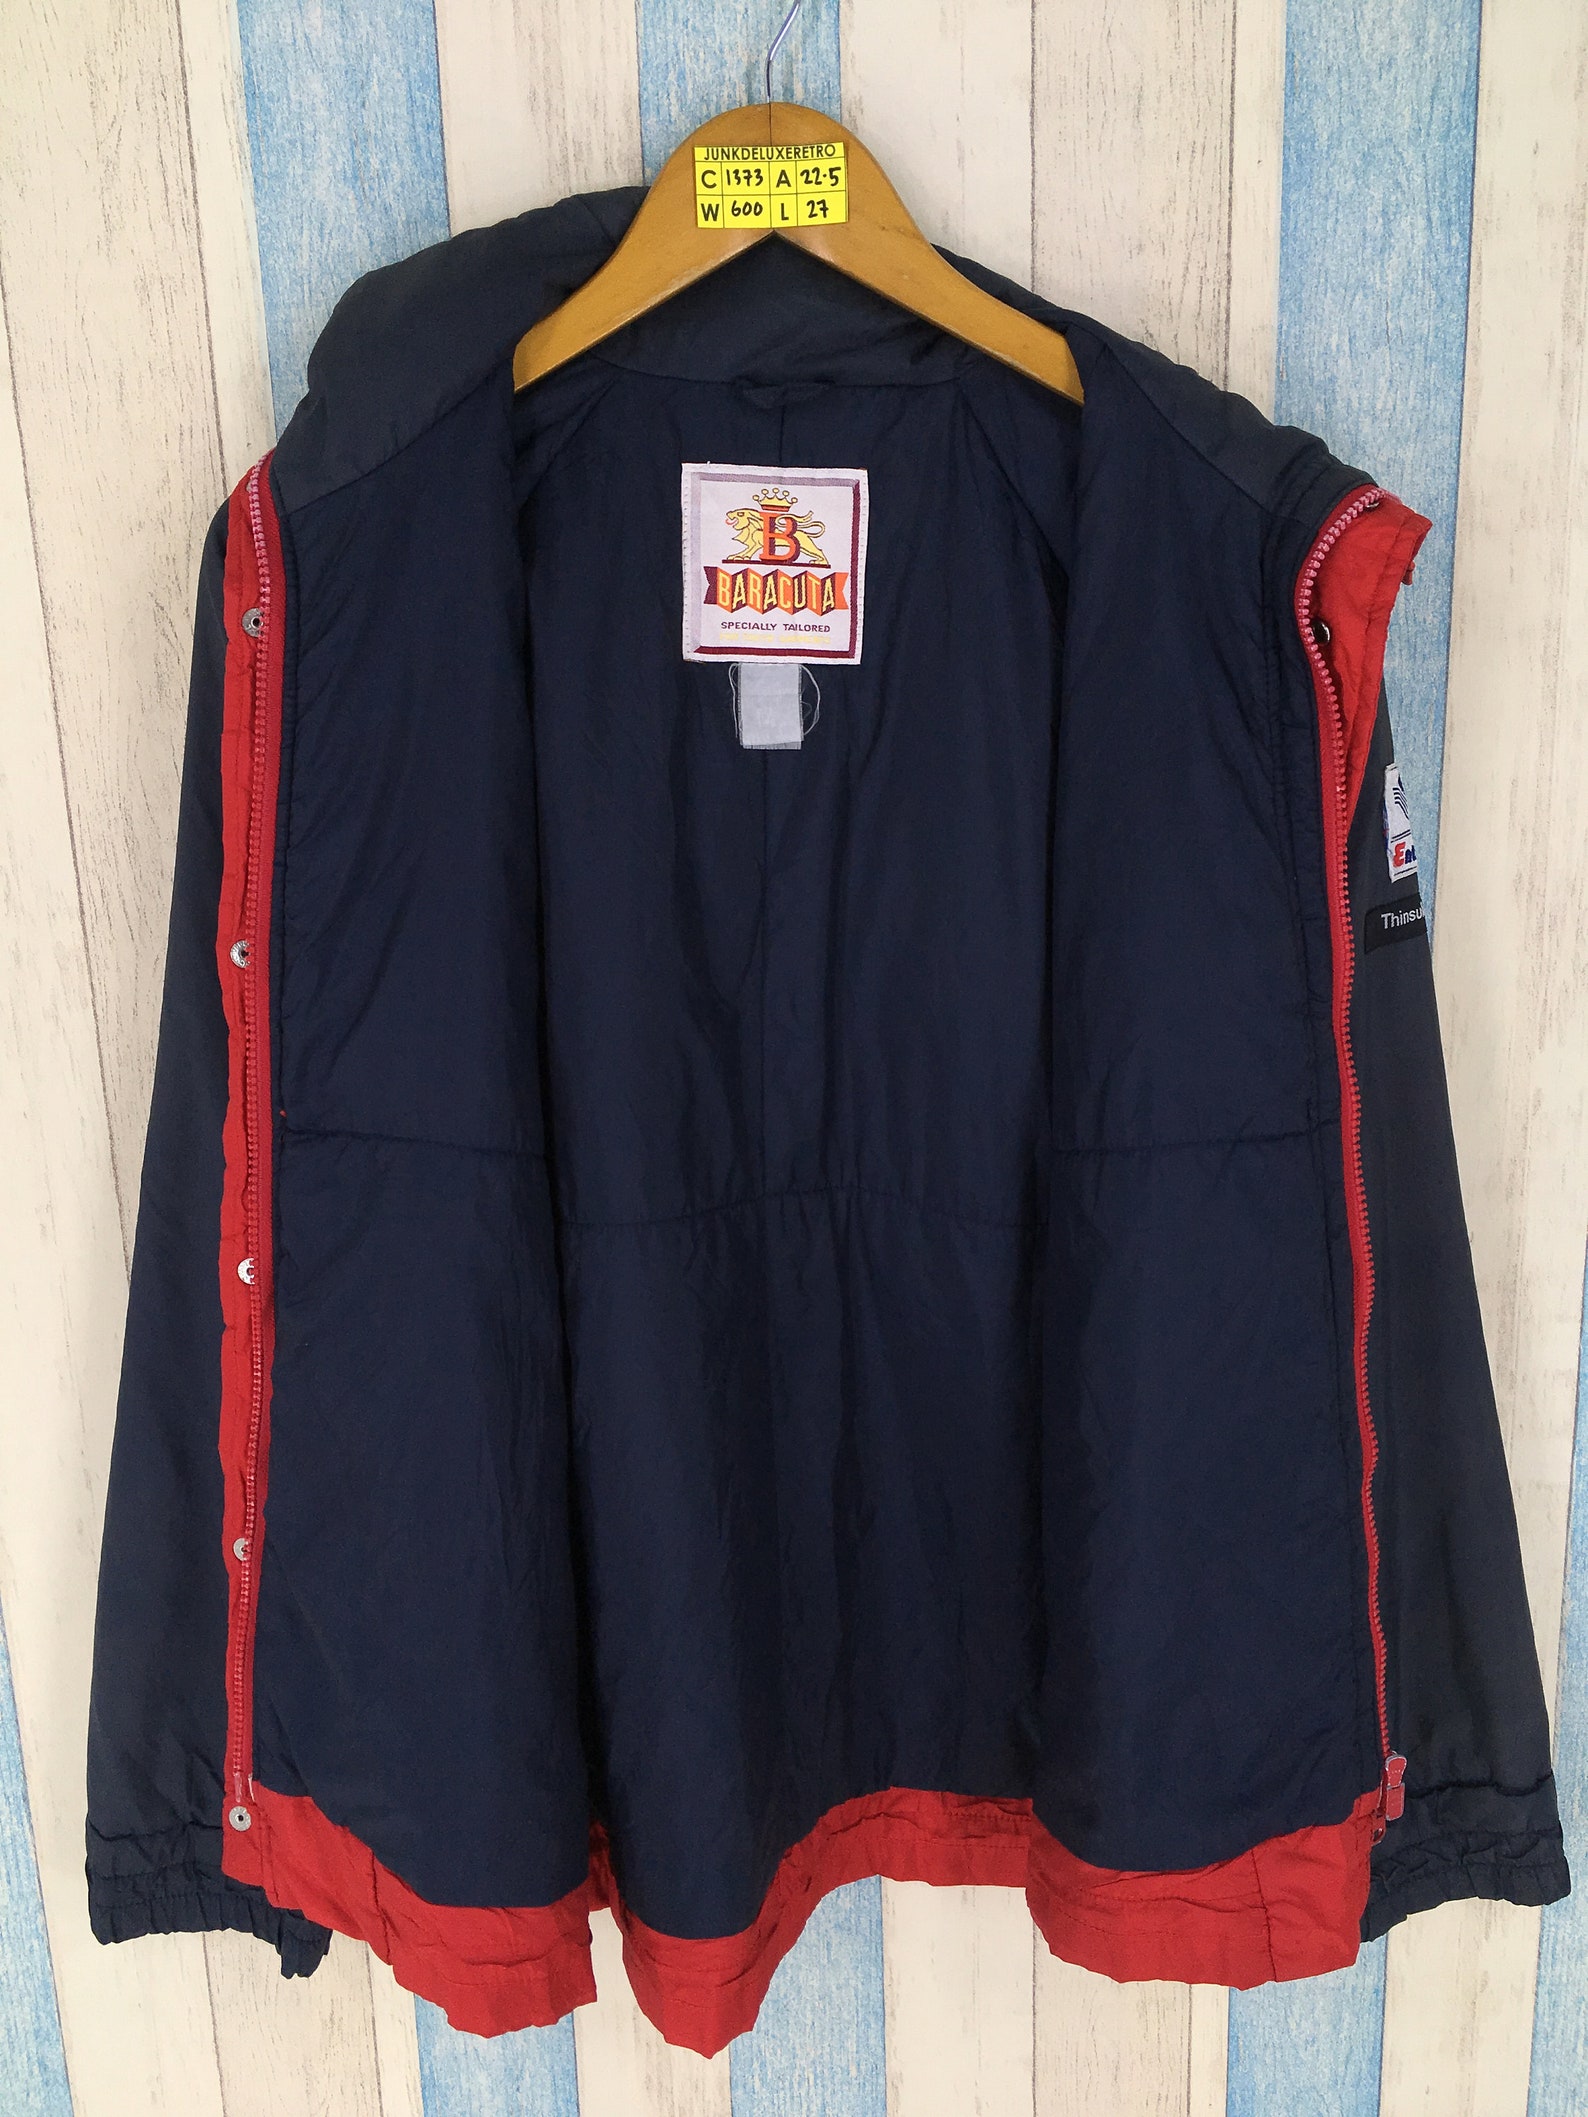 Vintage Baracuta Jacket Thinsulate Unisex Large Baracuta | Etsy